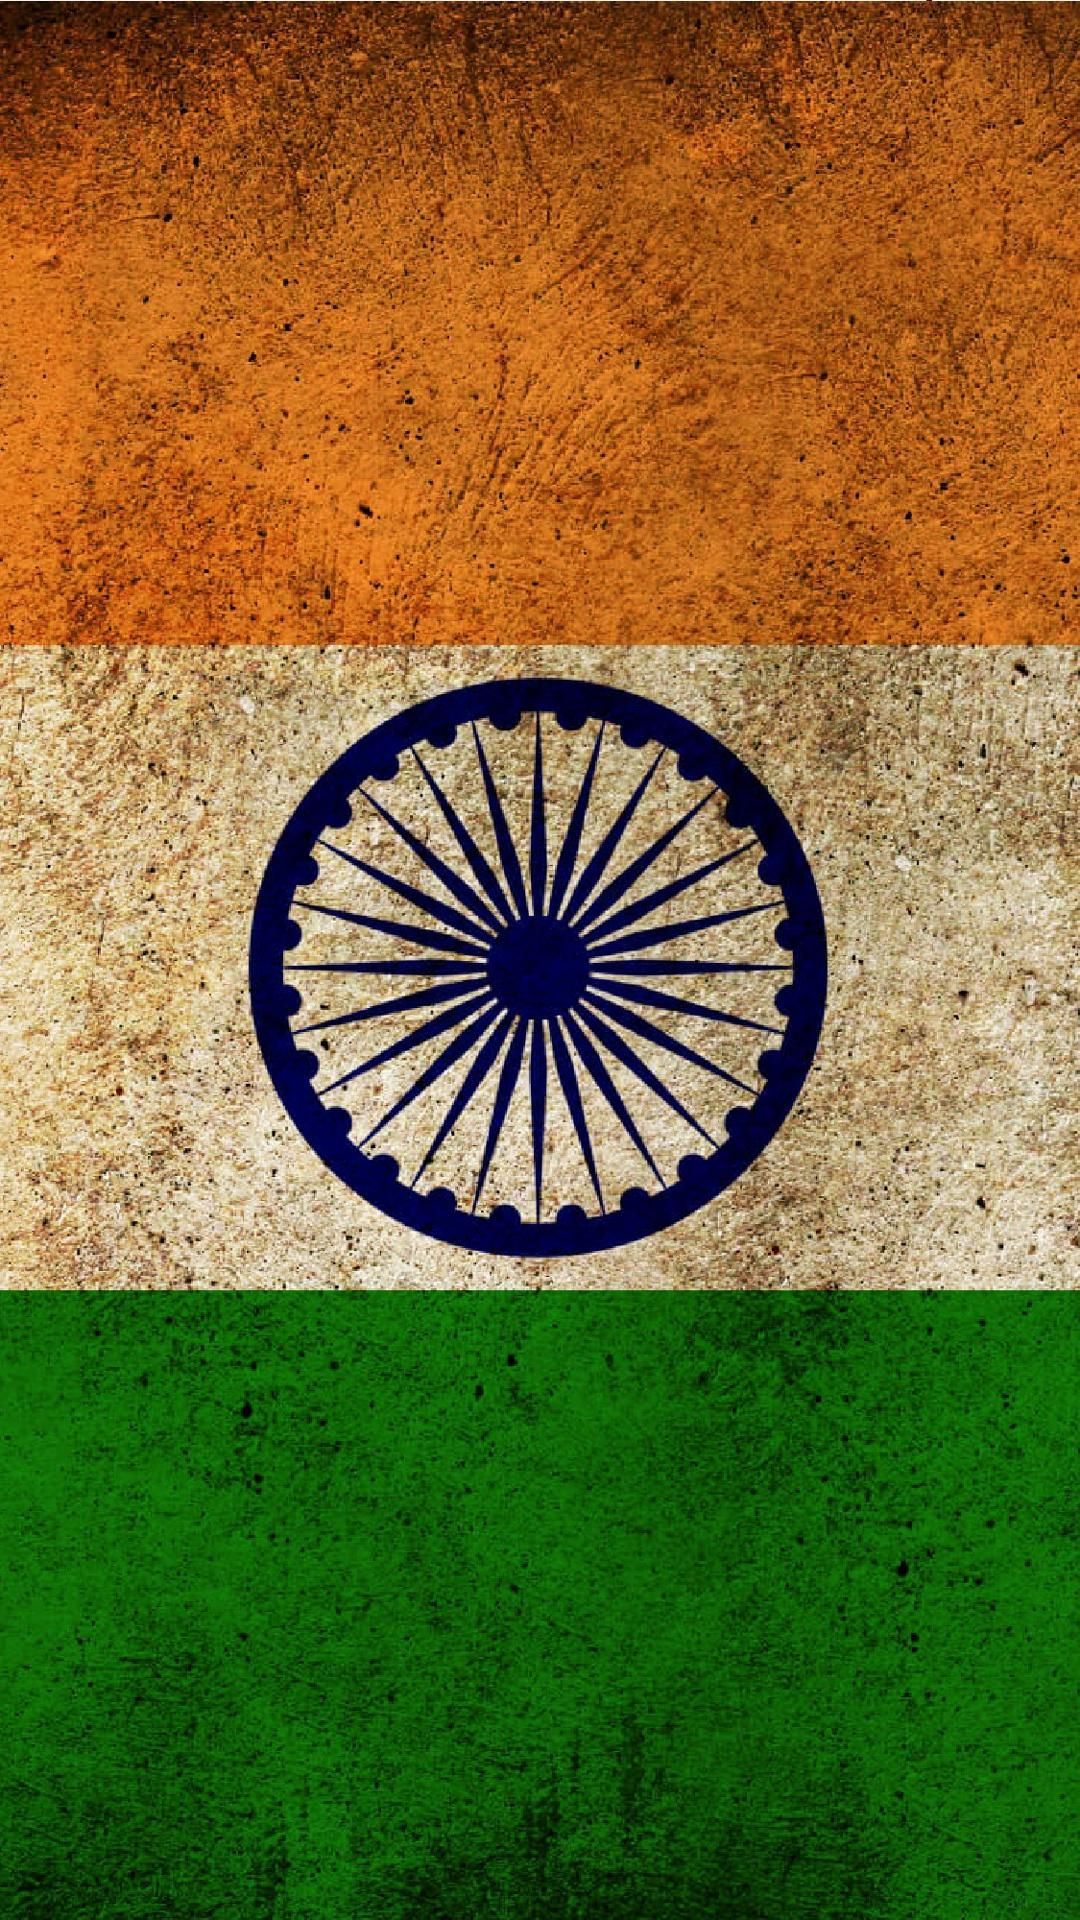 Indian Flag. Indian flag wallpaper, Indian flag image